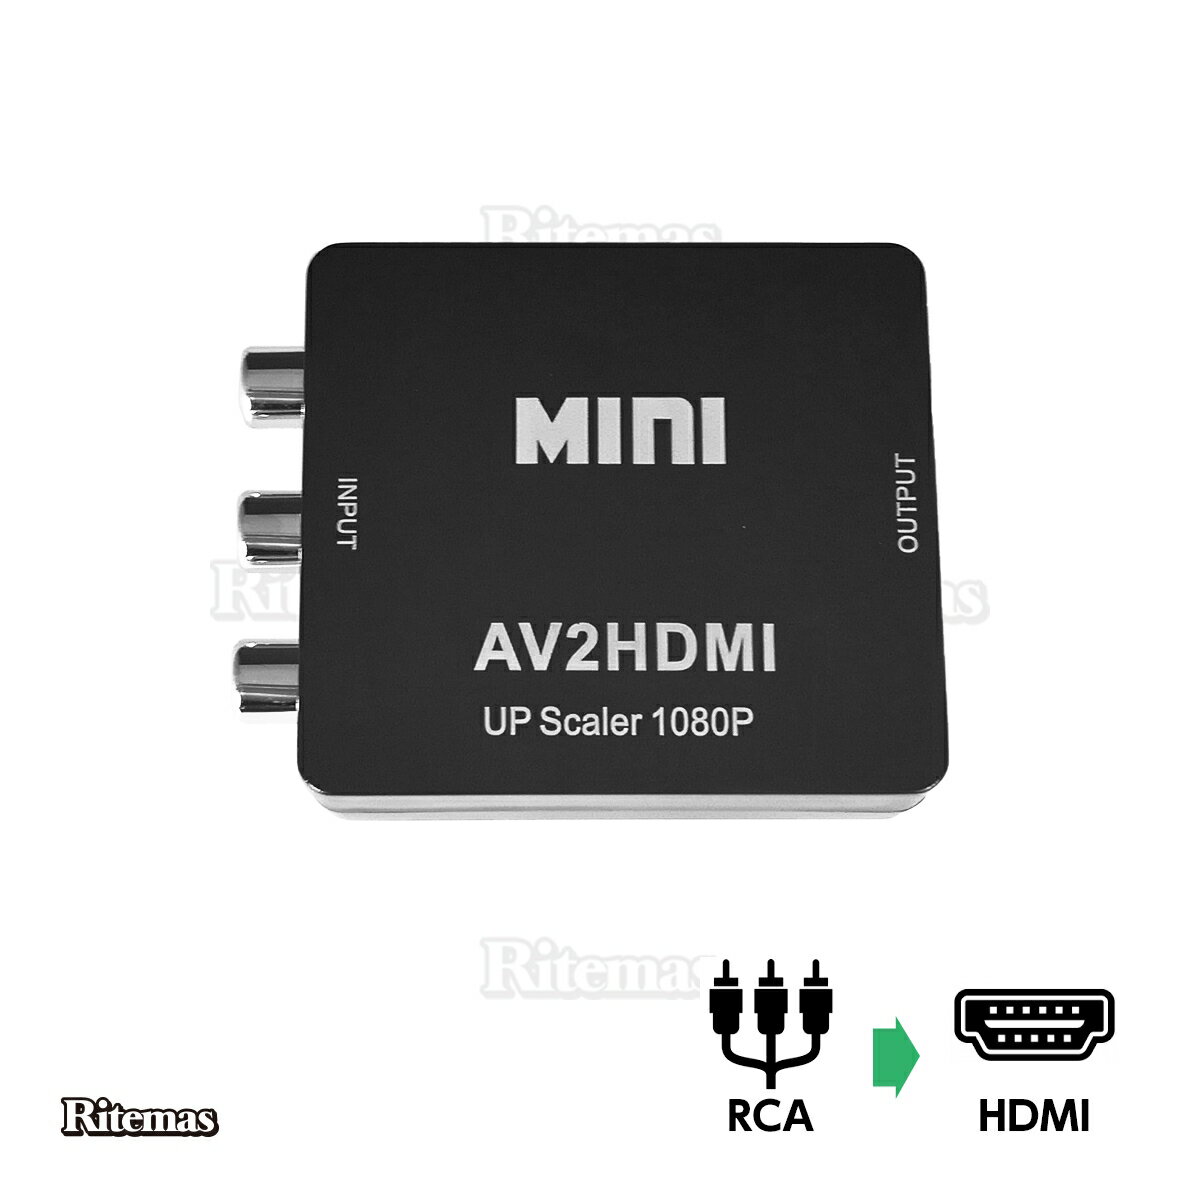 RCA to HDMI変換コンバーター 変換器 コンバーター アダプター コネクター AV to HDMI コンバーター AVケーブル 変換…